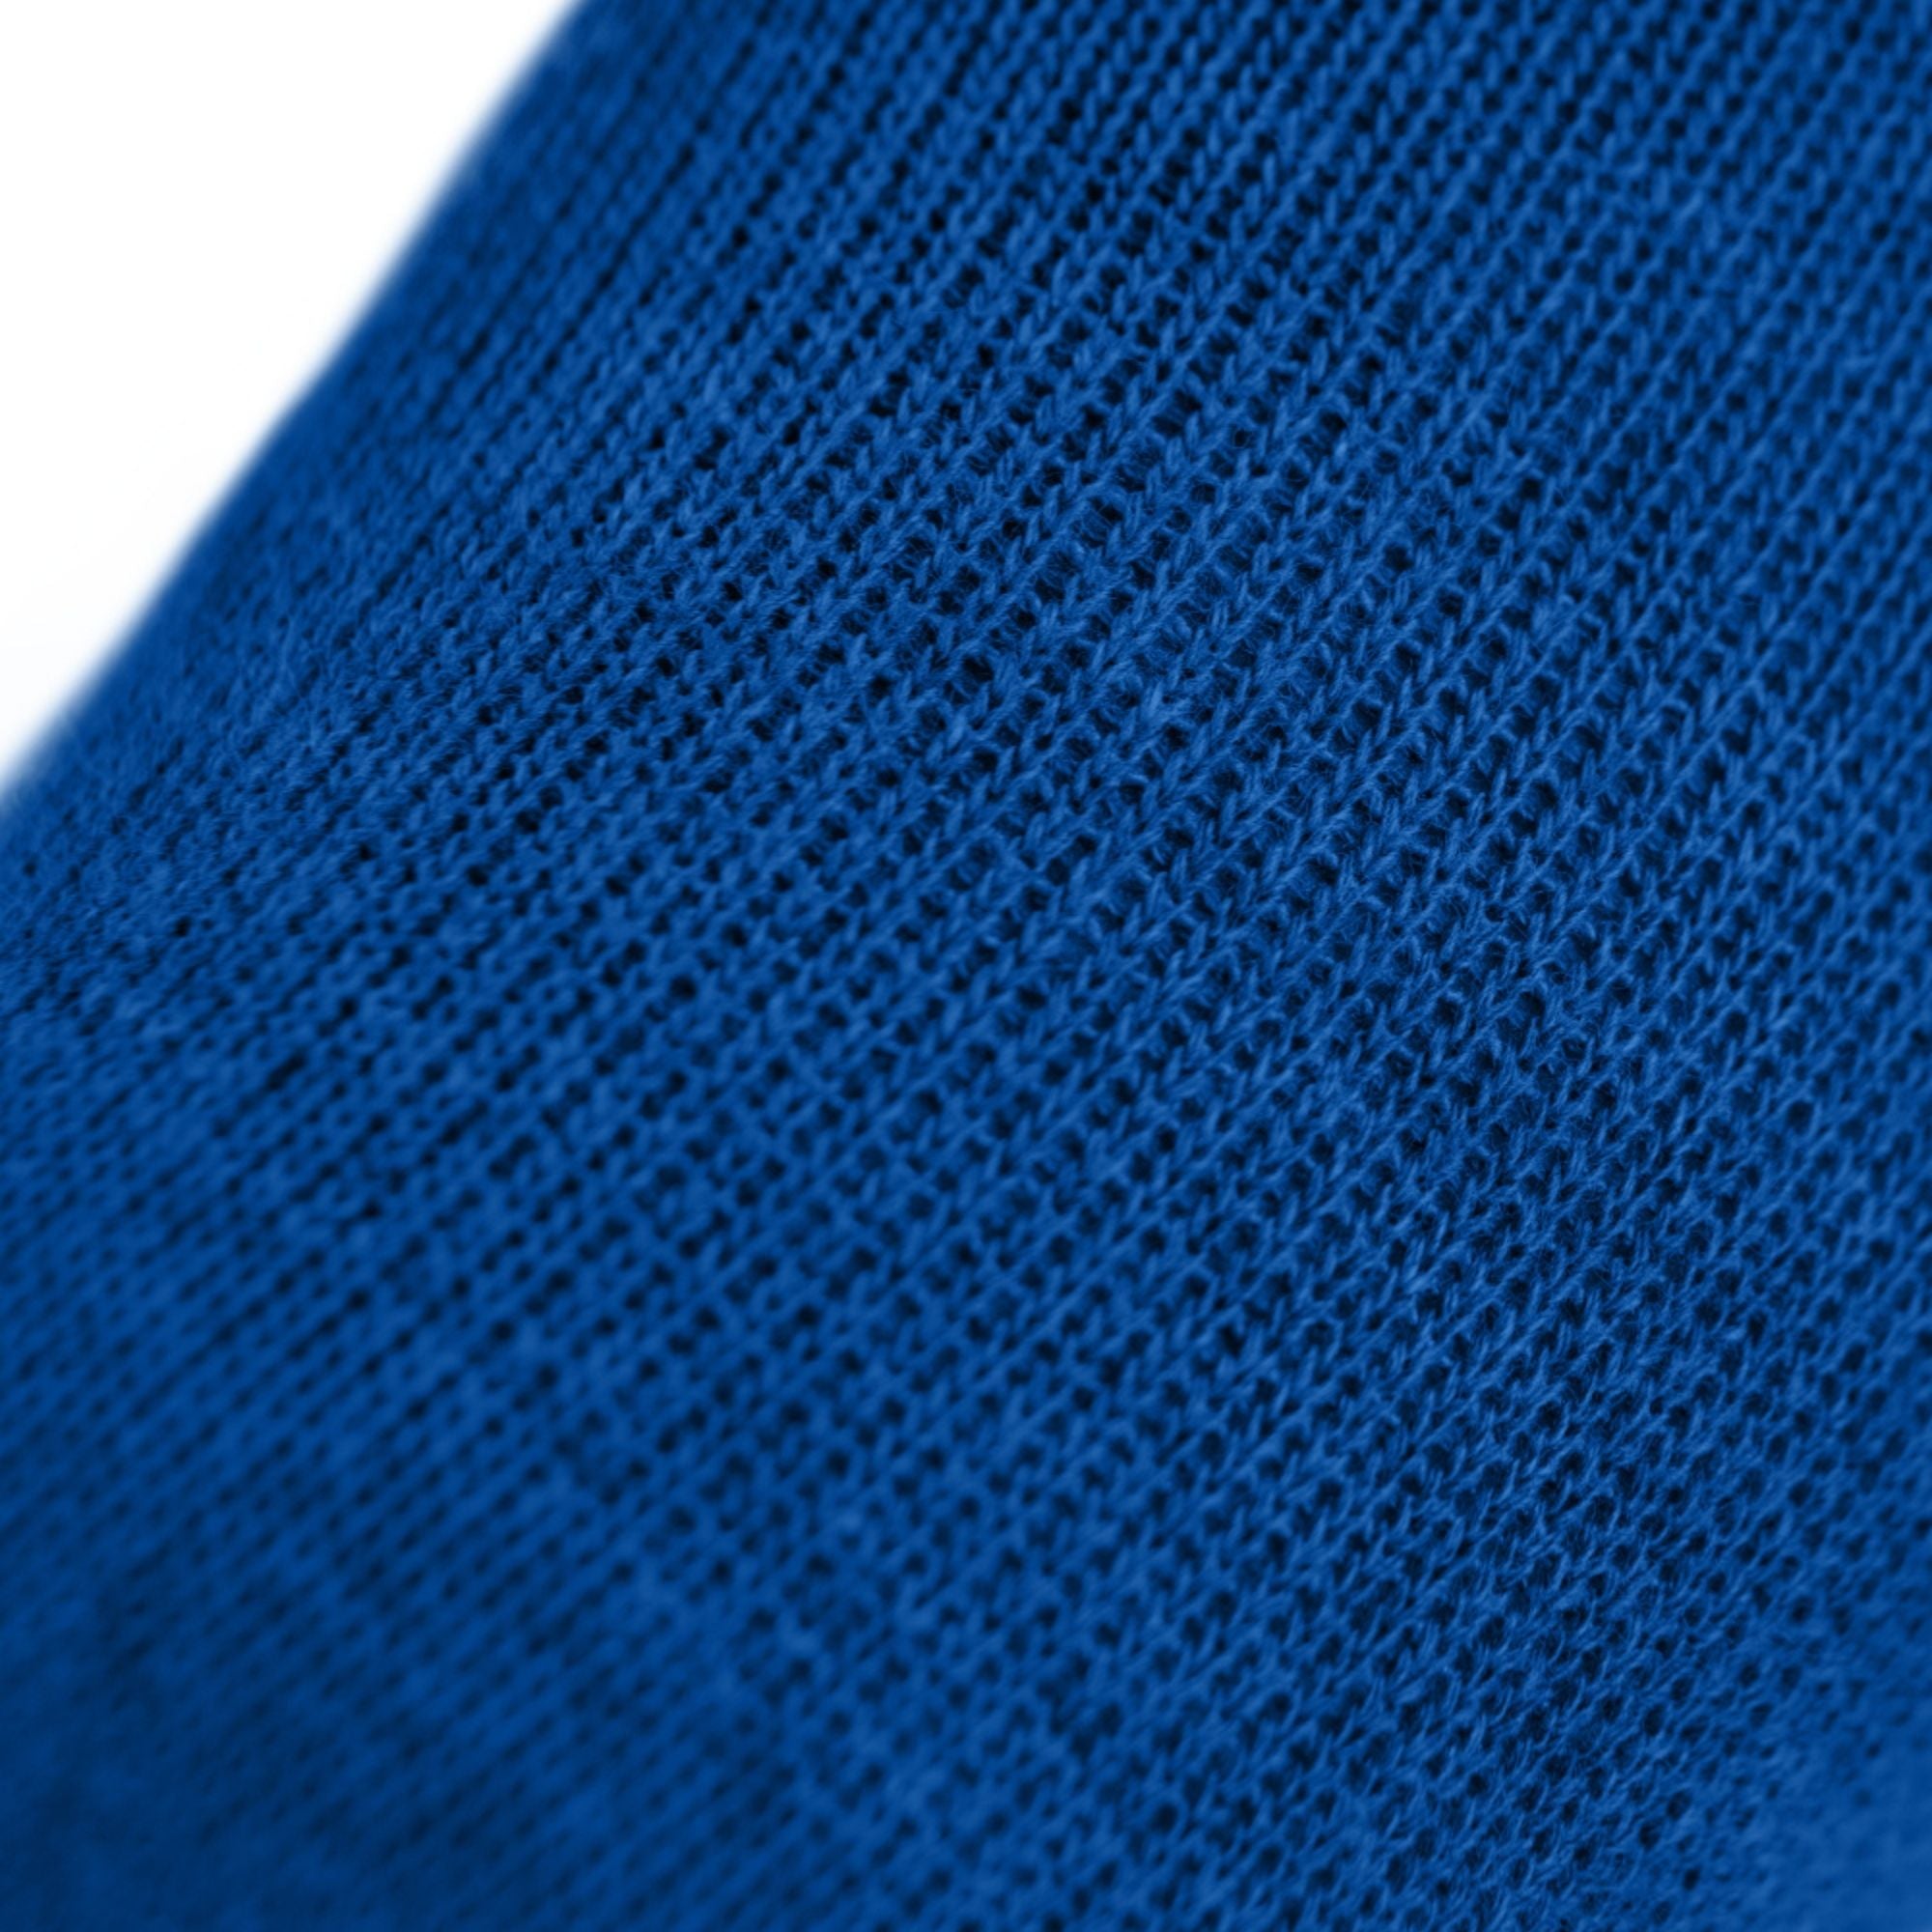 3 pakete športnih nogavic iz materiala Coolmax in bombaža znamke Knitido v mandarinsko modri barvi